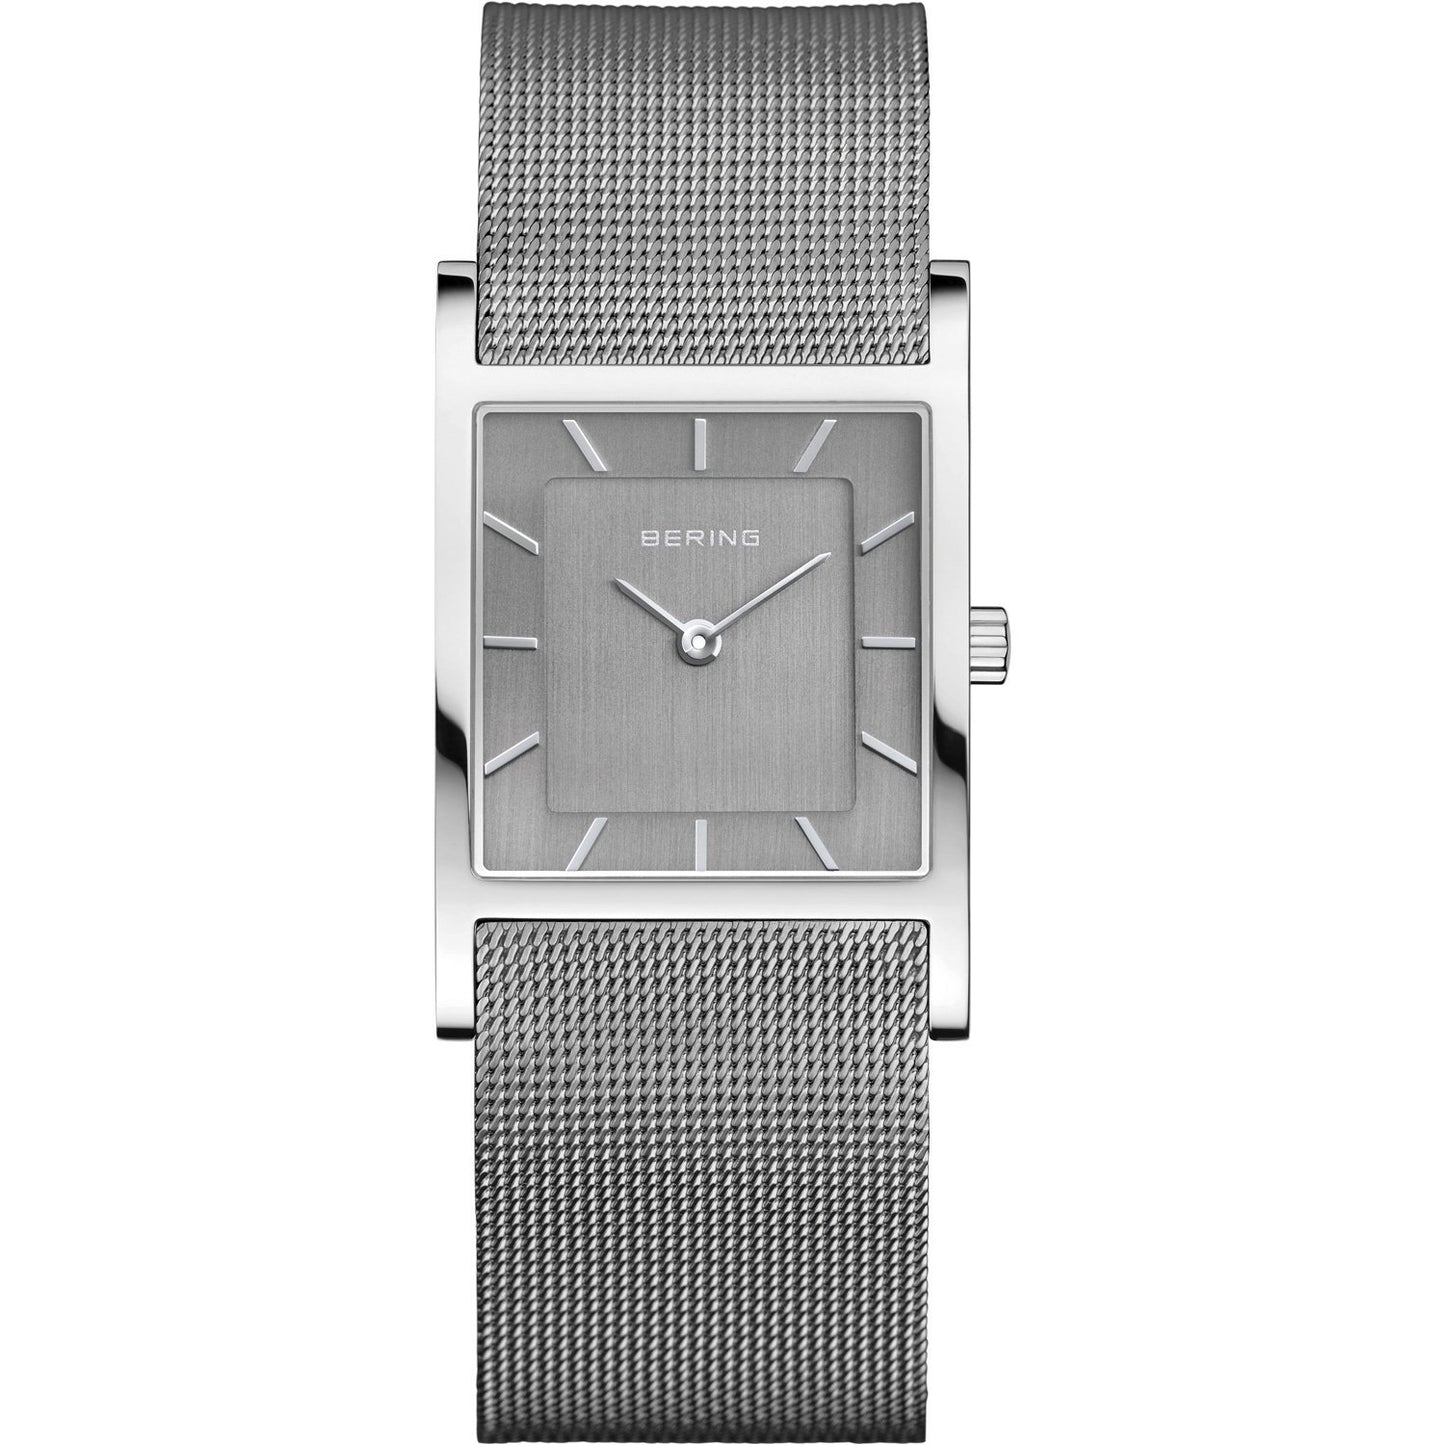 Reloj Bering minimalista mujer cuadrado gris